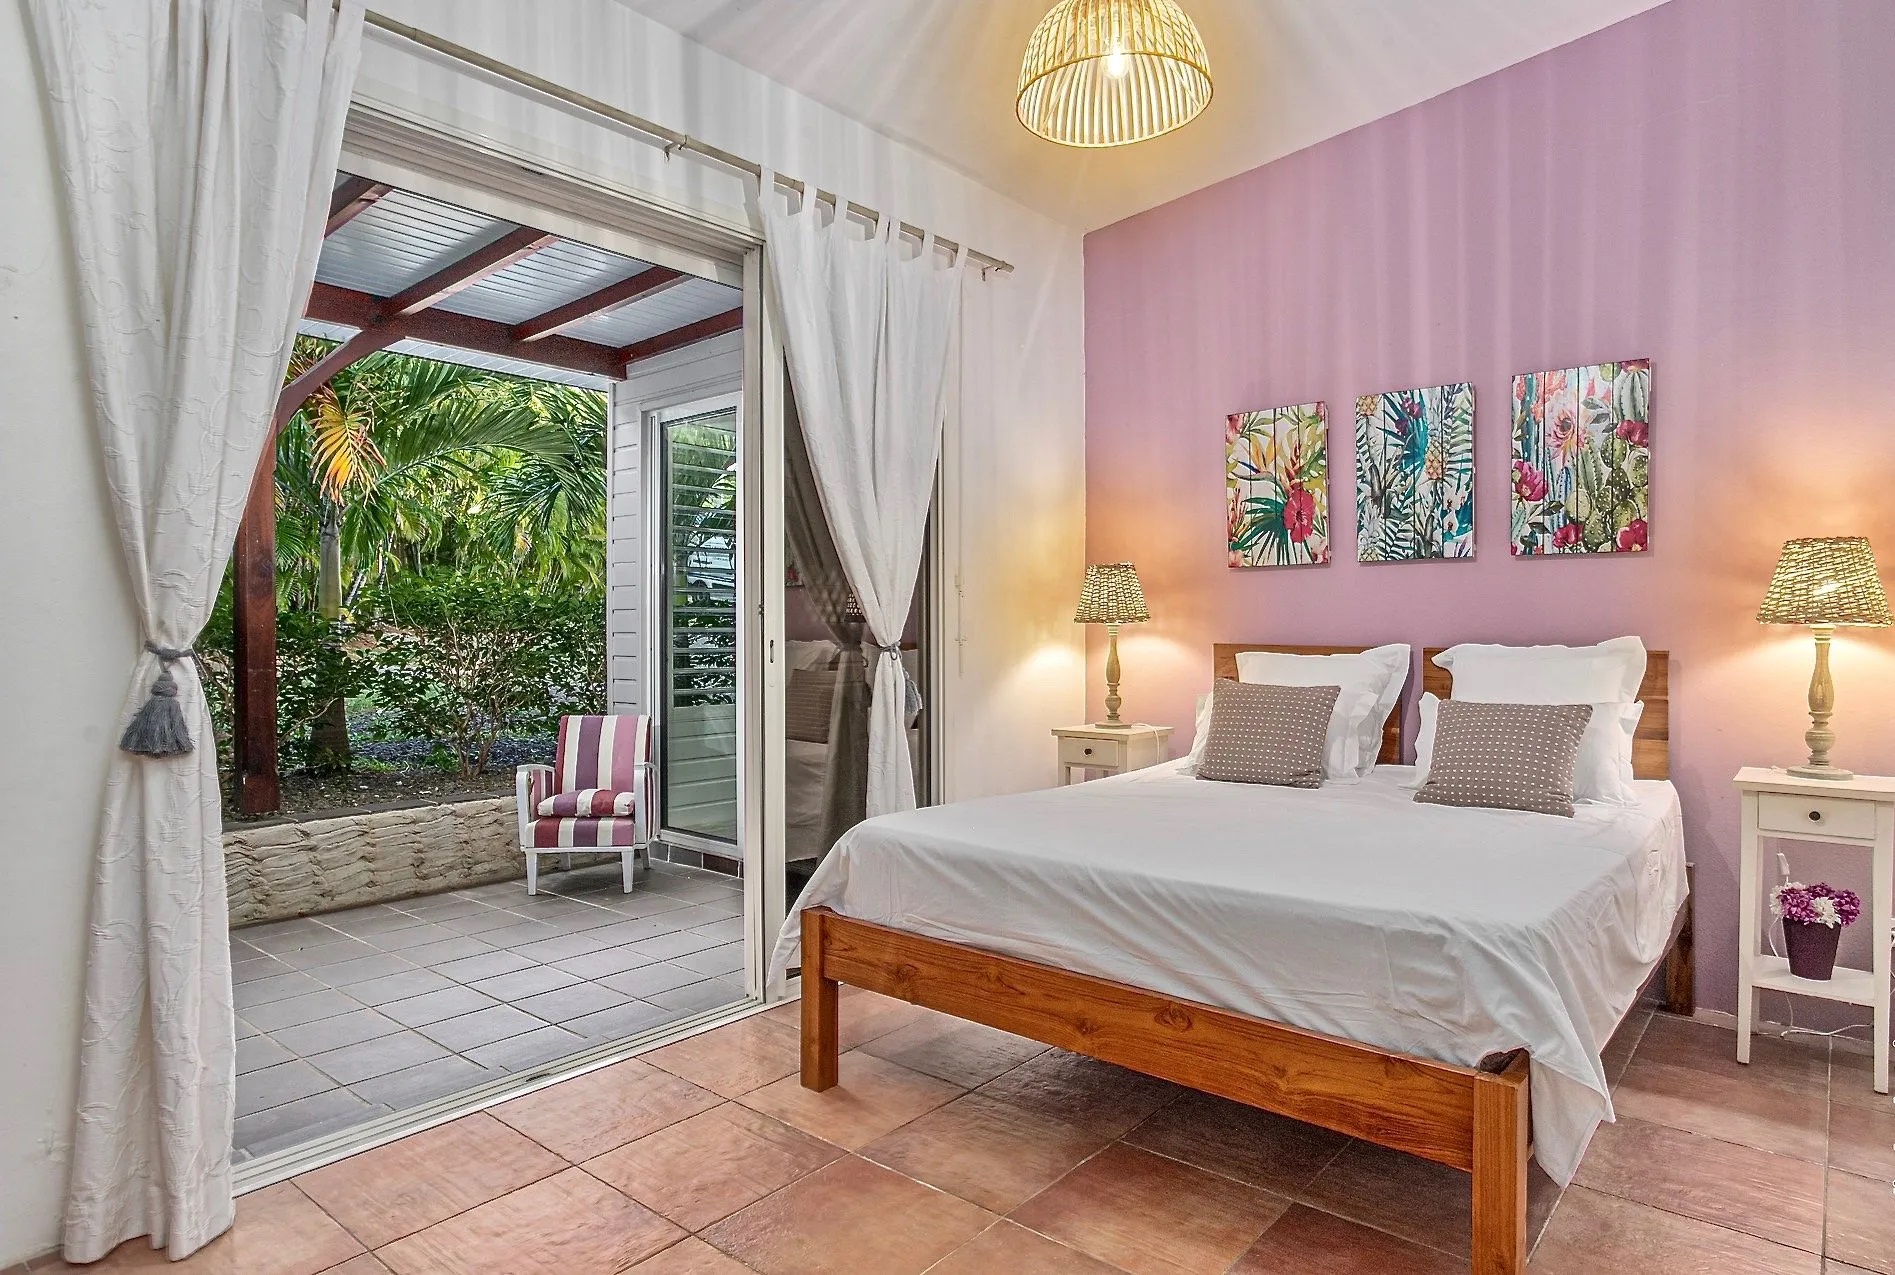 Location villa Luxe pour relaxer pendant les vacances : La Sirène du Diamant Martinique